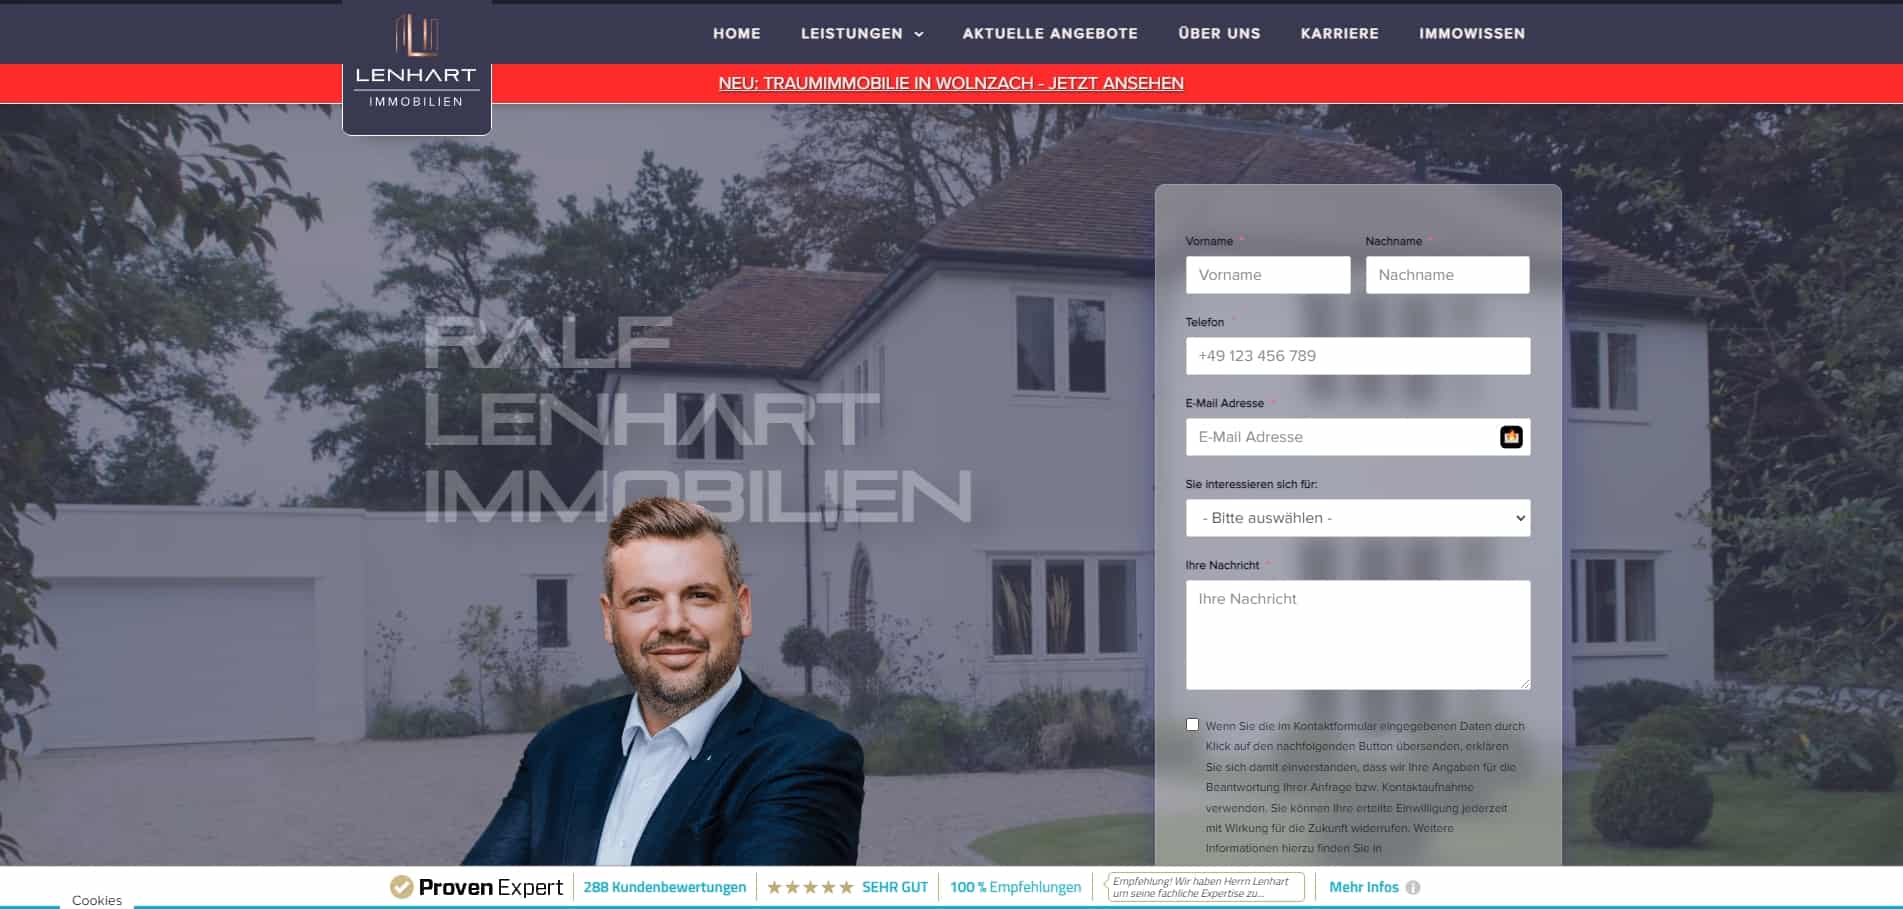 Ein Website-Design, das die Lenhart Immobilien GmbH mit einem Mann vor einem Haus zeigt.